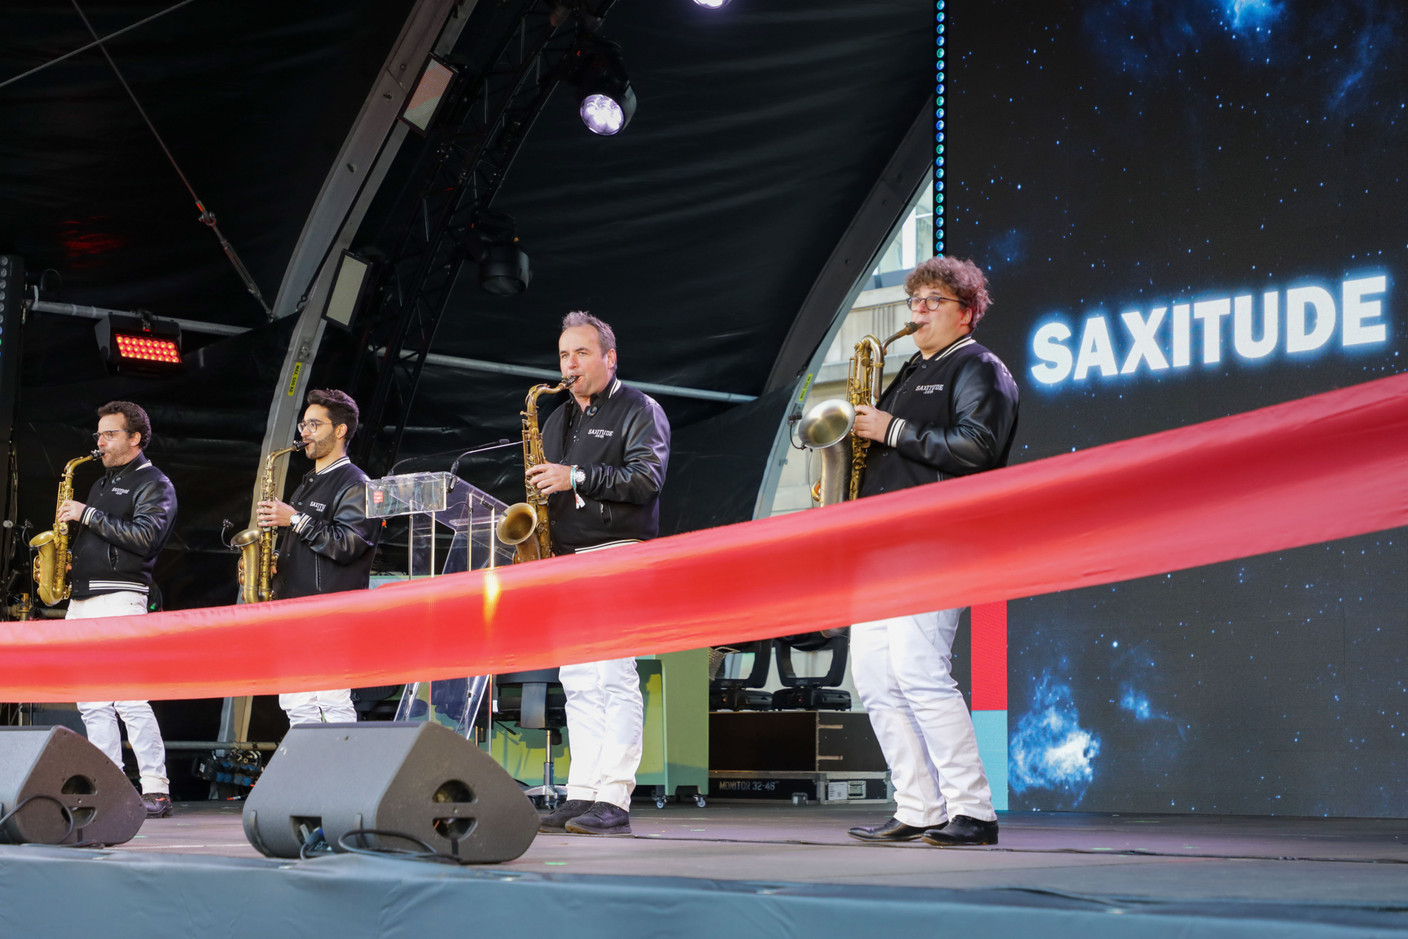 Avec des styles de musique variés. Ici: Le groupe Saxitude.  (Photo: Luc Deflorenne/Maison Moderne) 